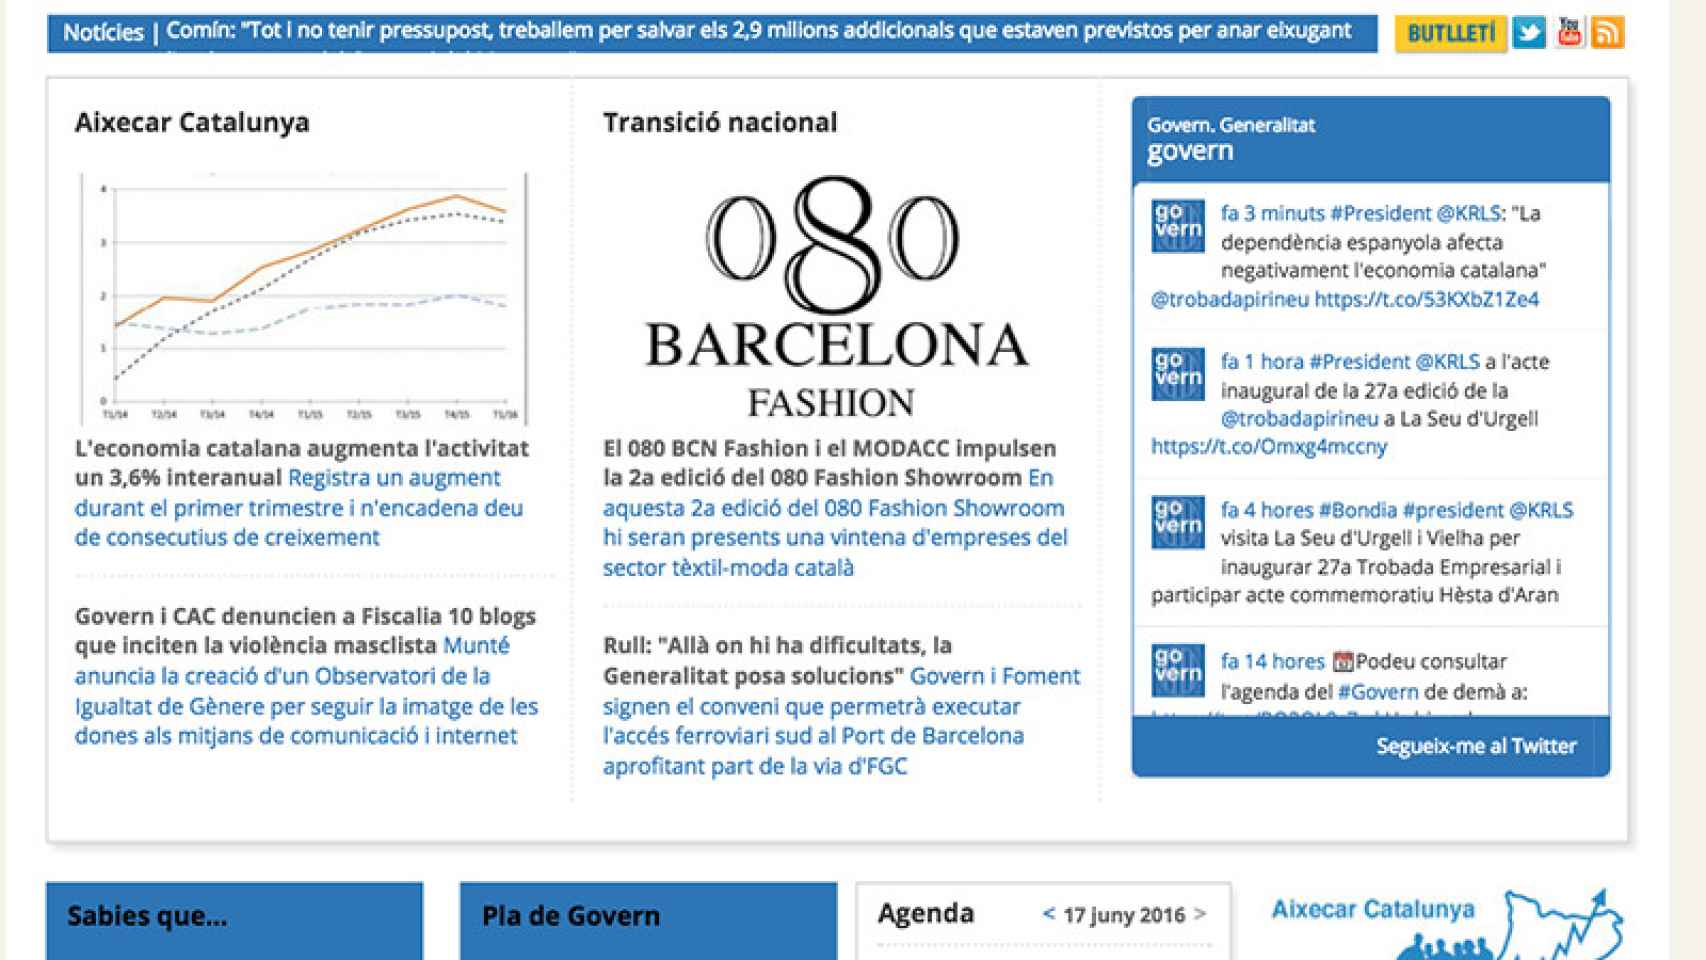 Web de la Generalitat que sitúa la celebración del 080 Barcelona Fashion en la transición nacional.